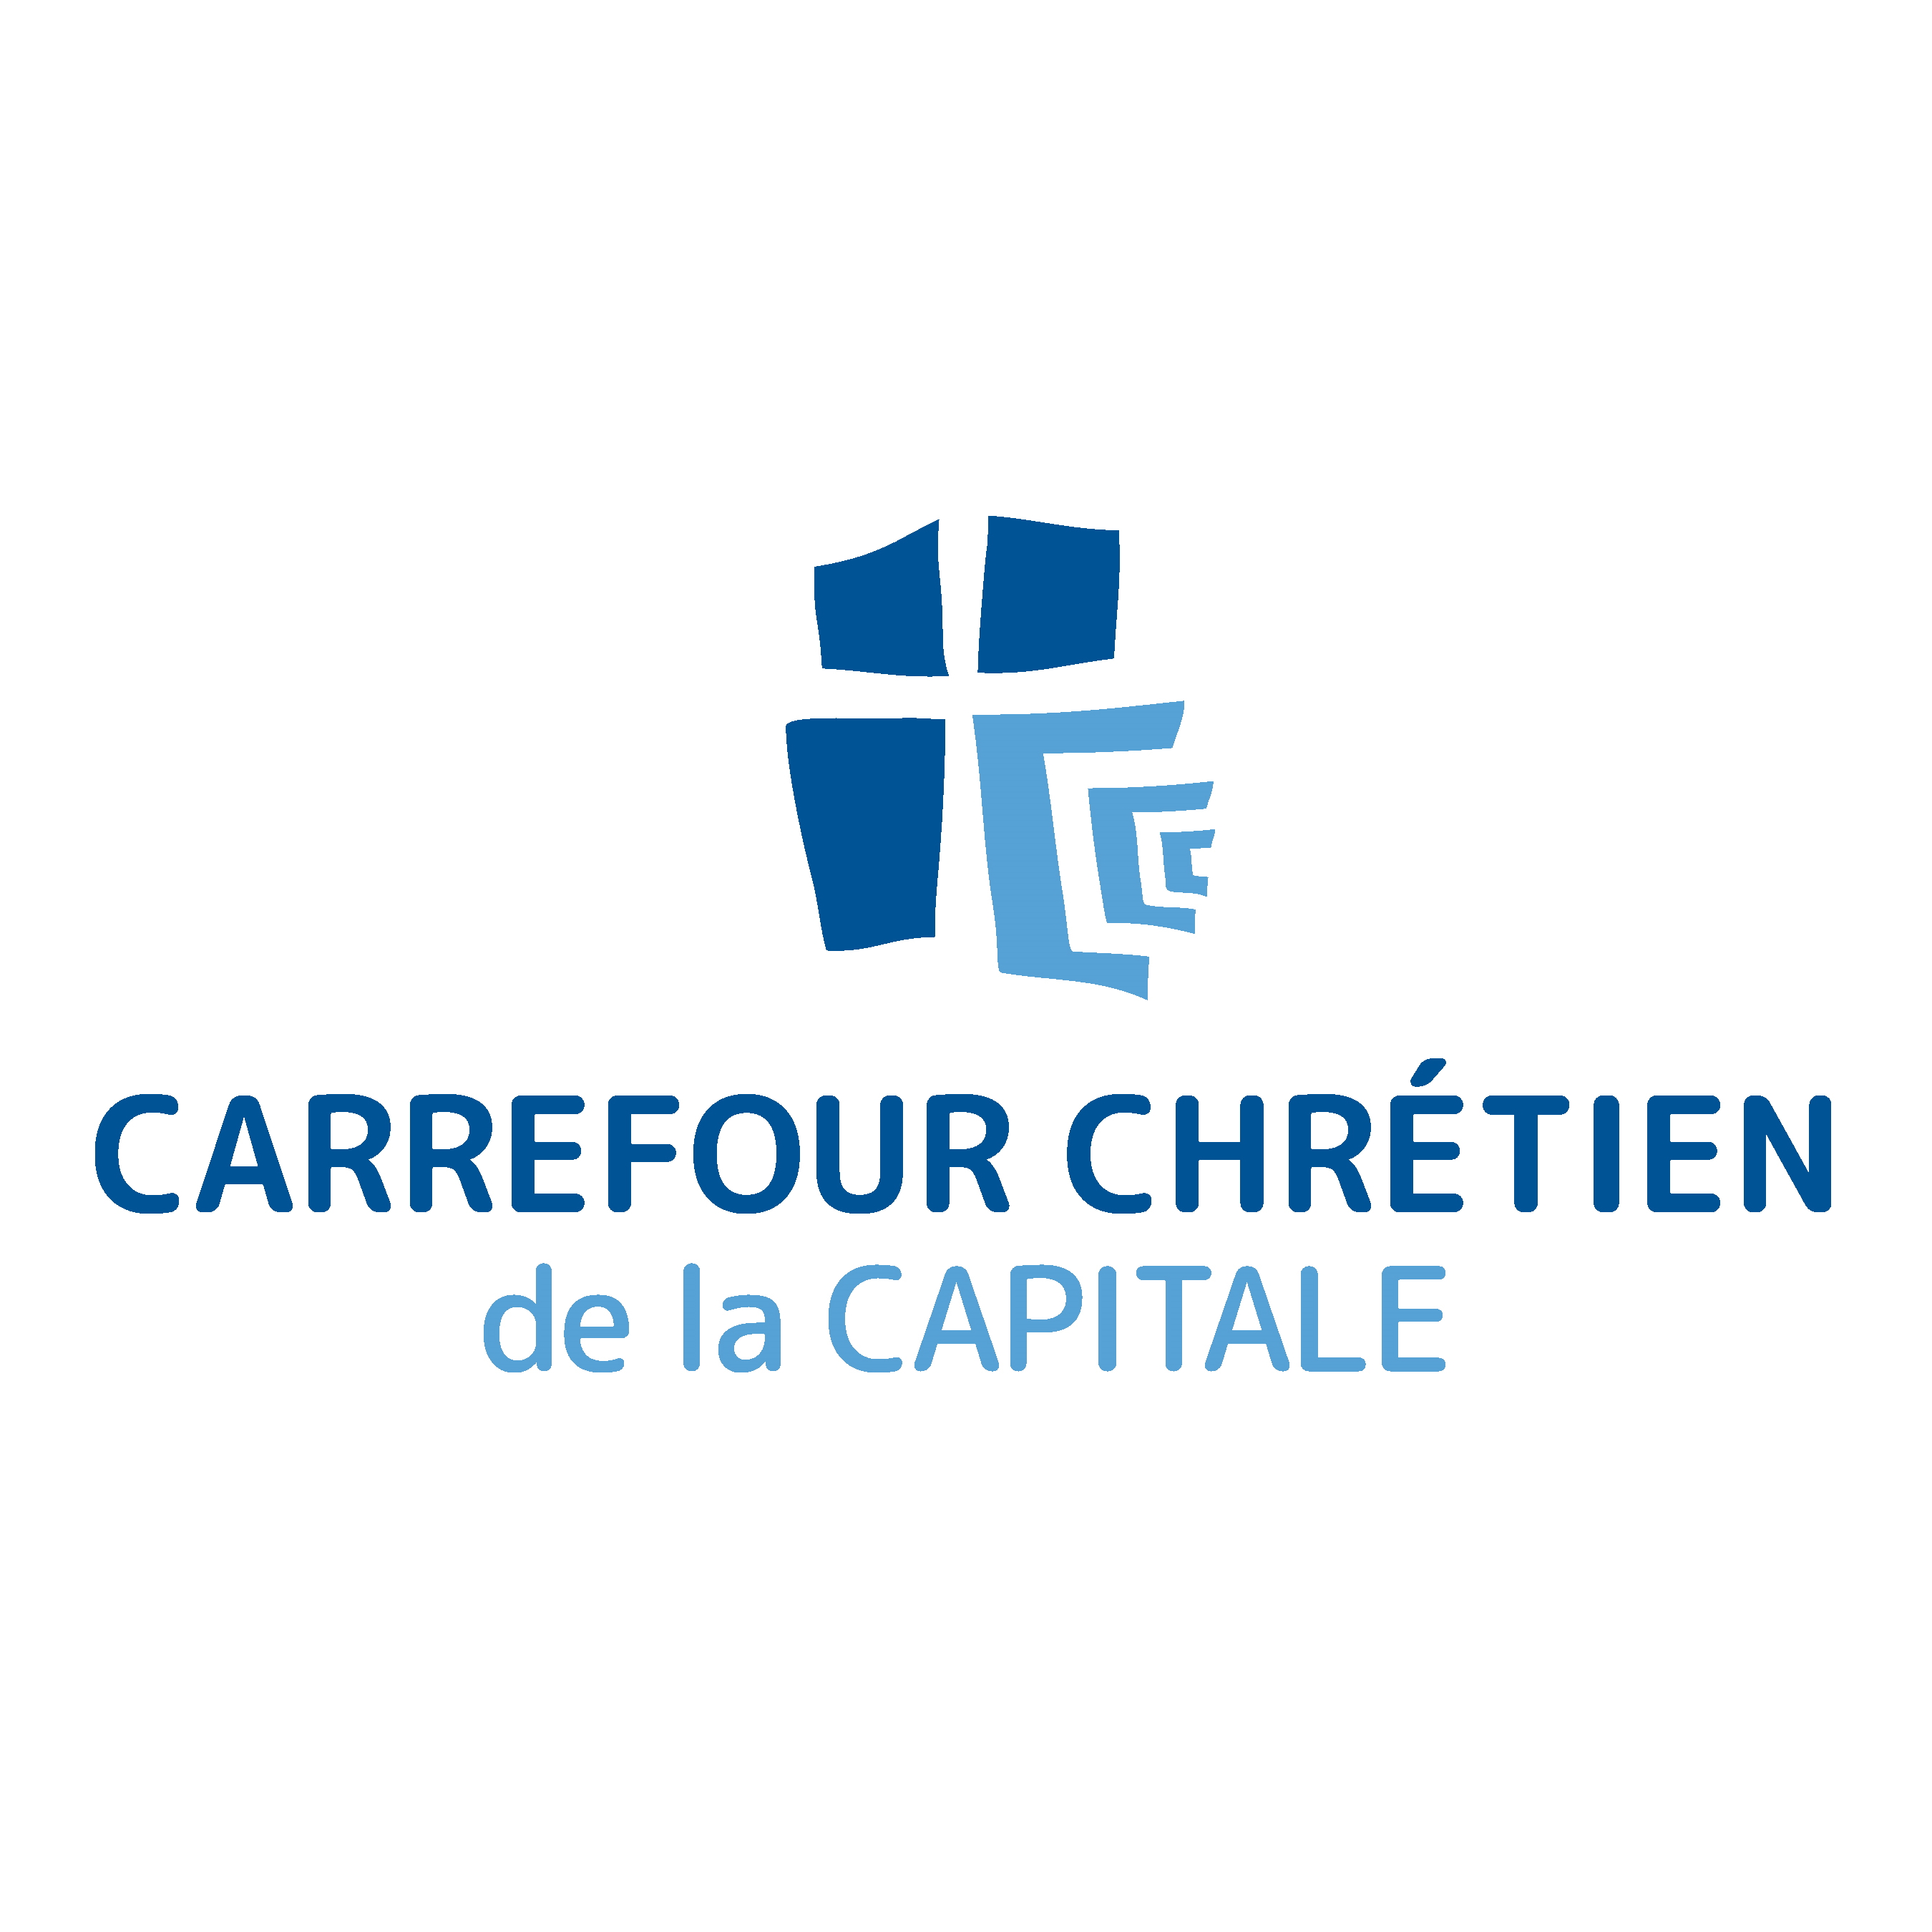 Carrefour Chrétien de la Capitale